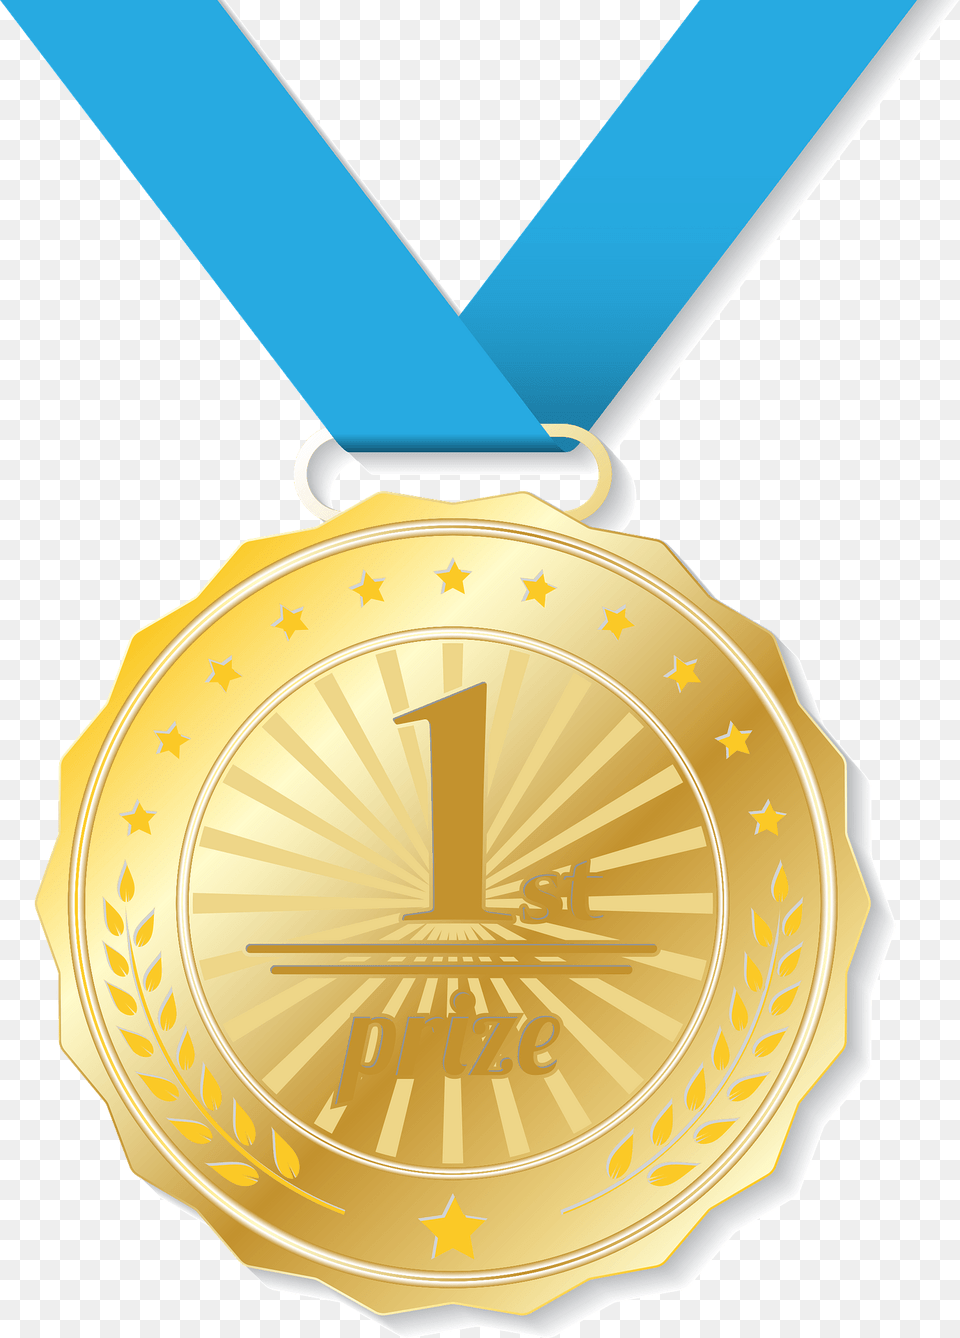 Gold Medal Clipart, Gold Medal, Trophy Png